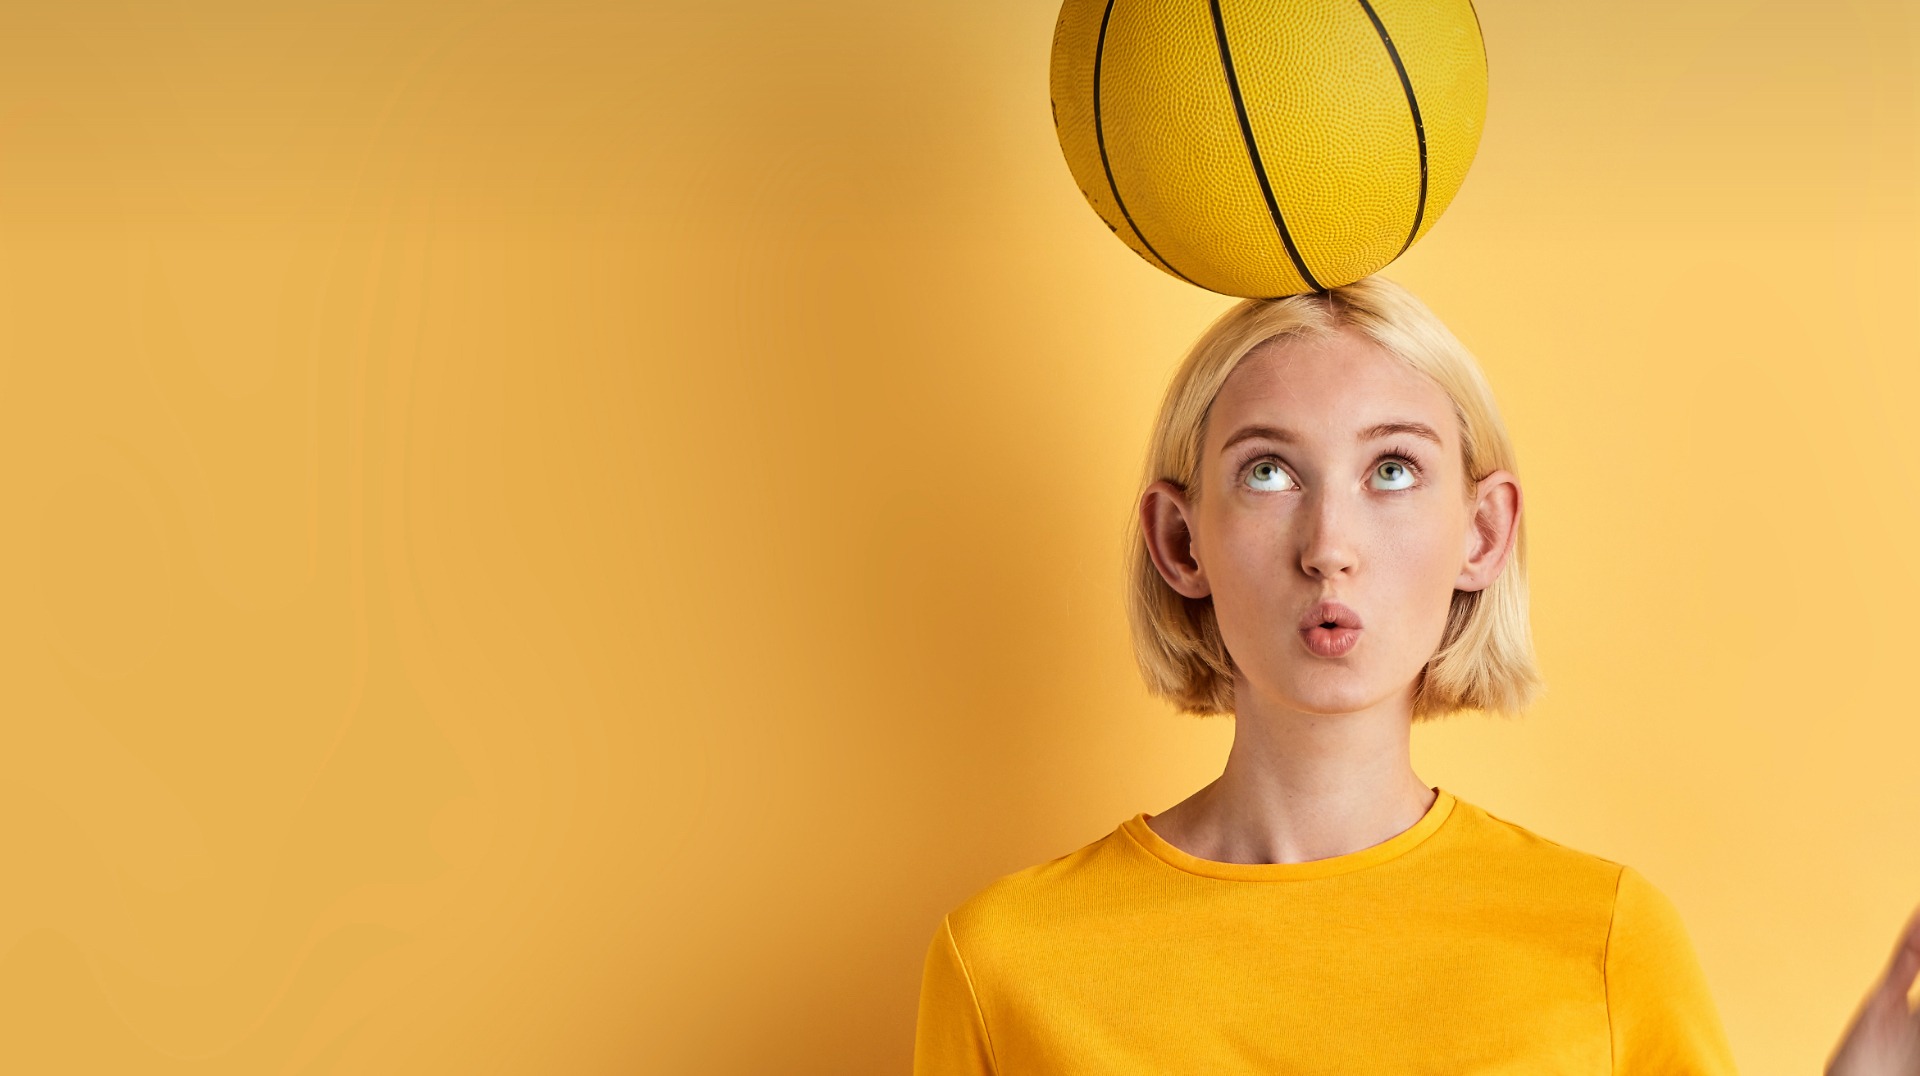 Jeune fille avec une balle de basket jaune sur la tête